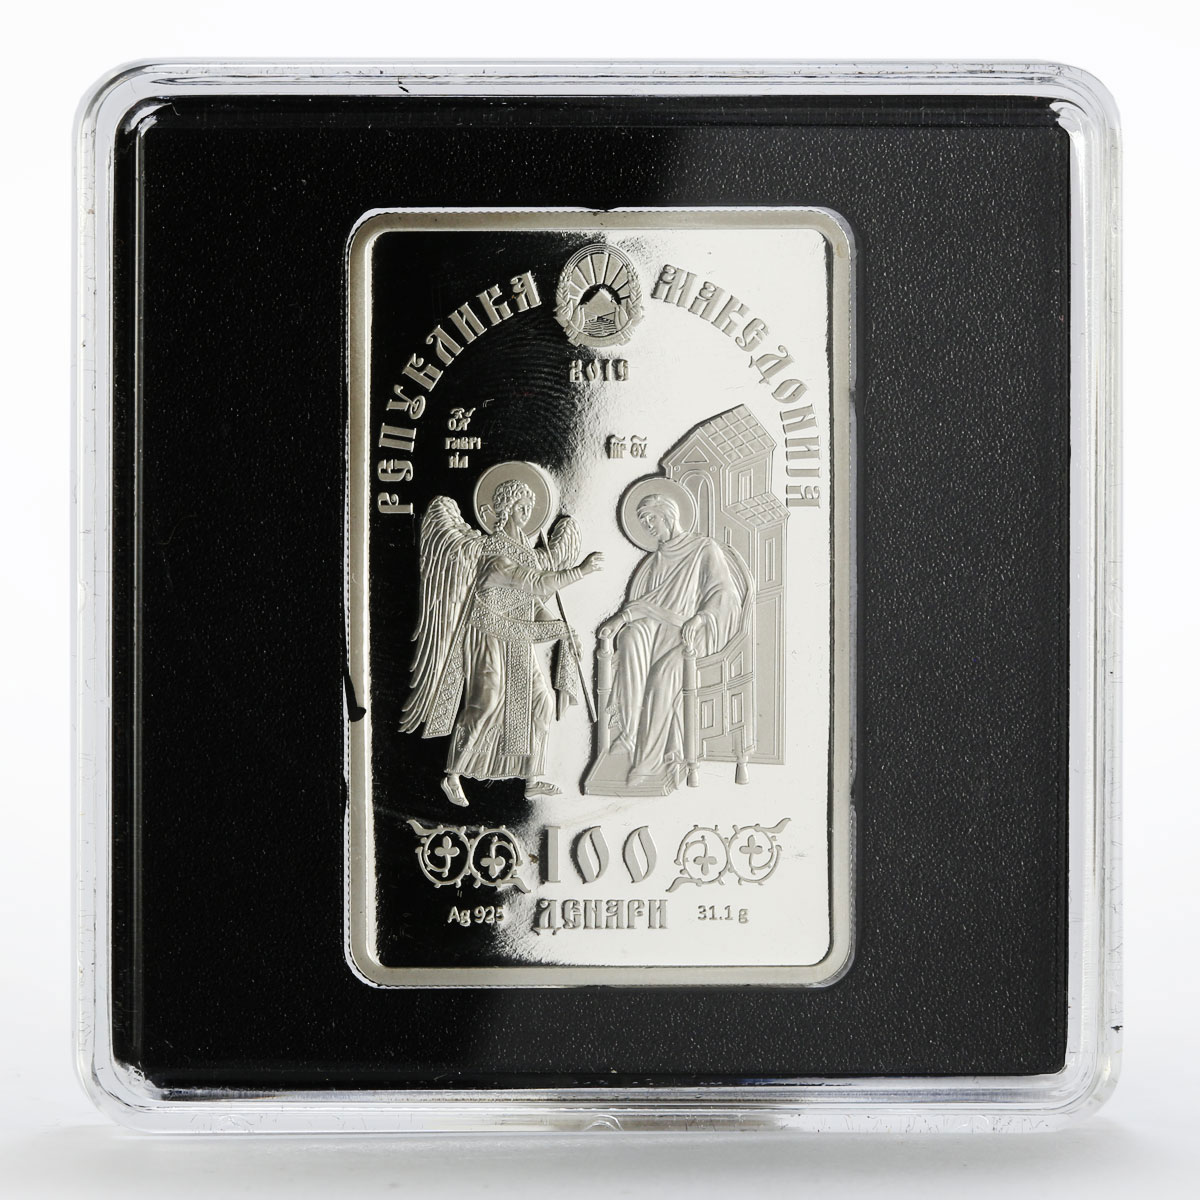 Macedonia 100 denars Icon of Vladimir silver coin 2016